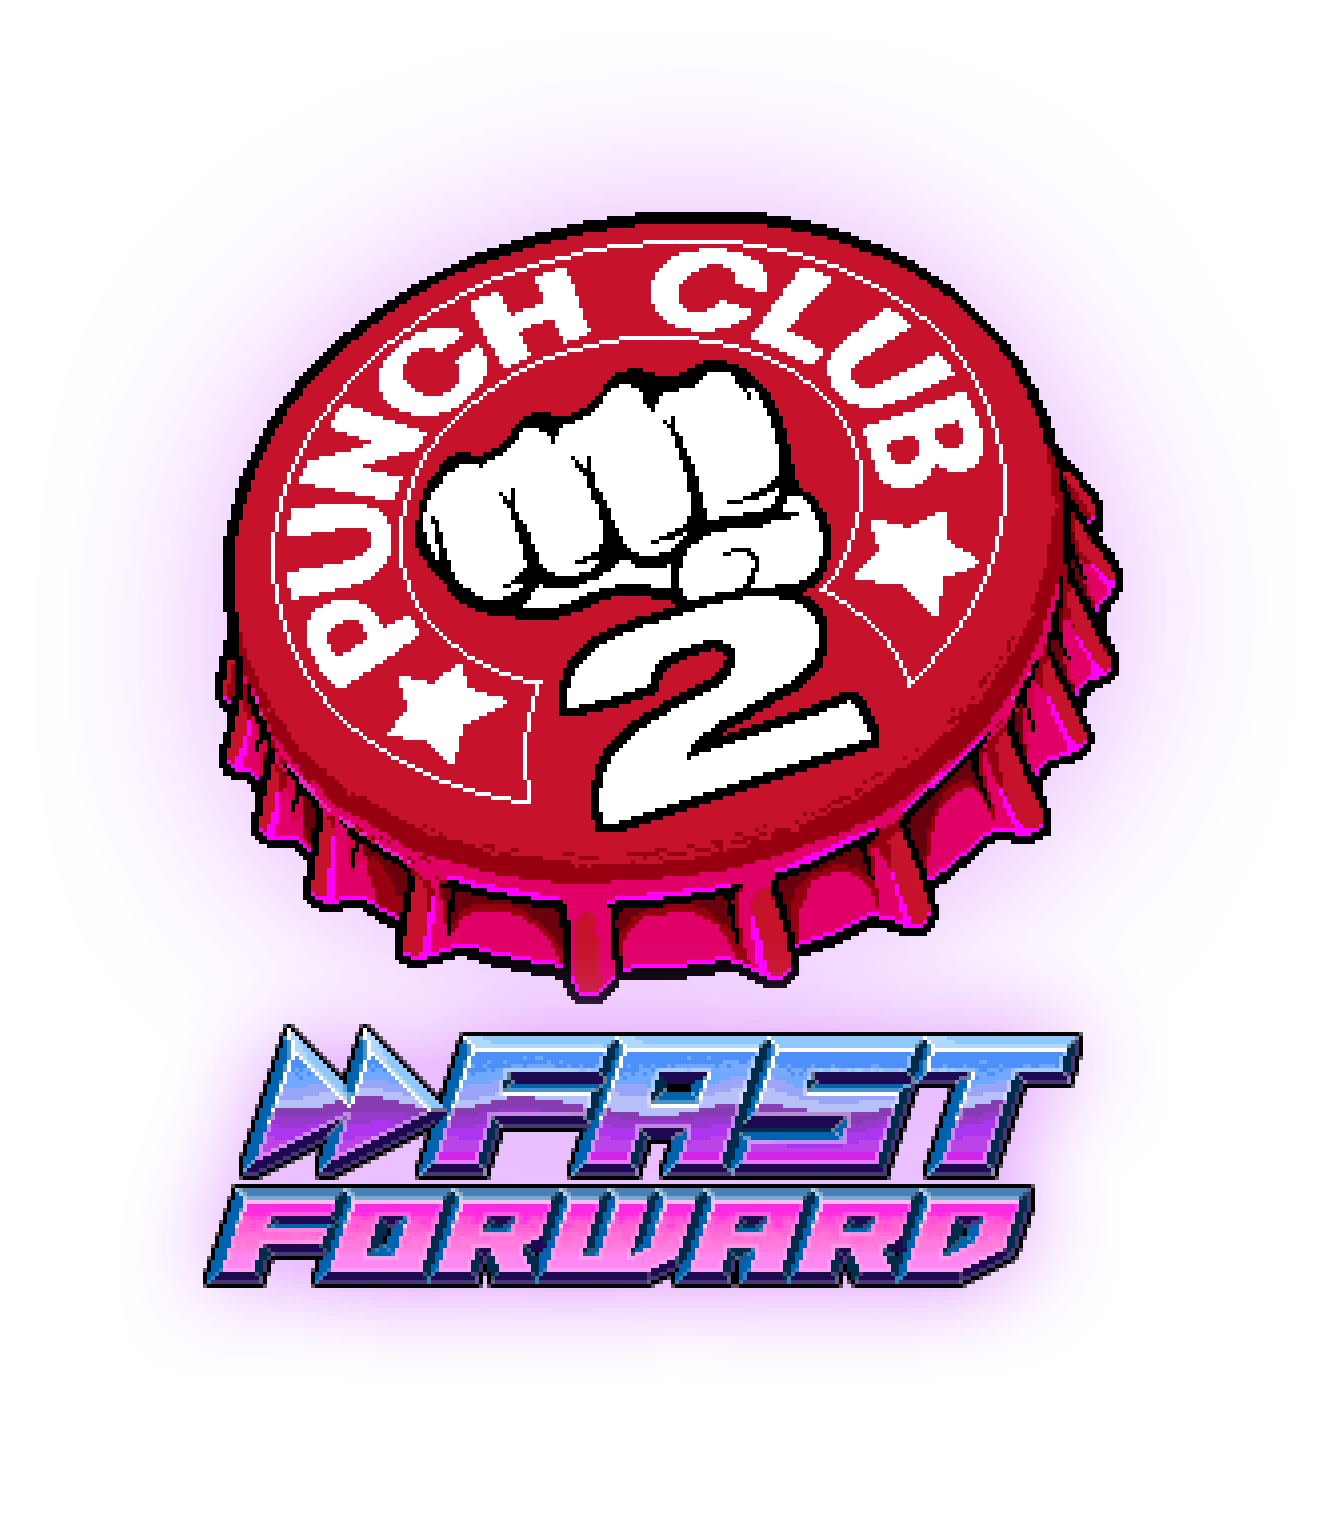 Club 2 fast forward